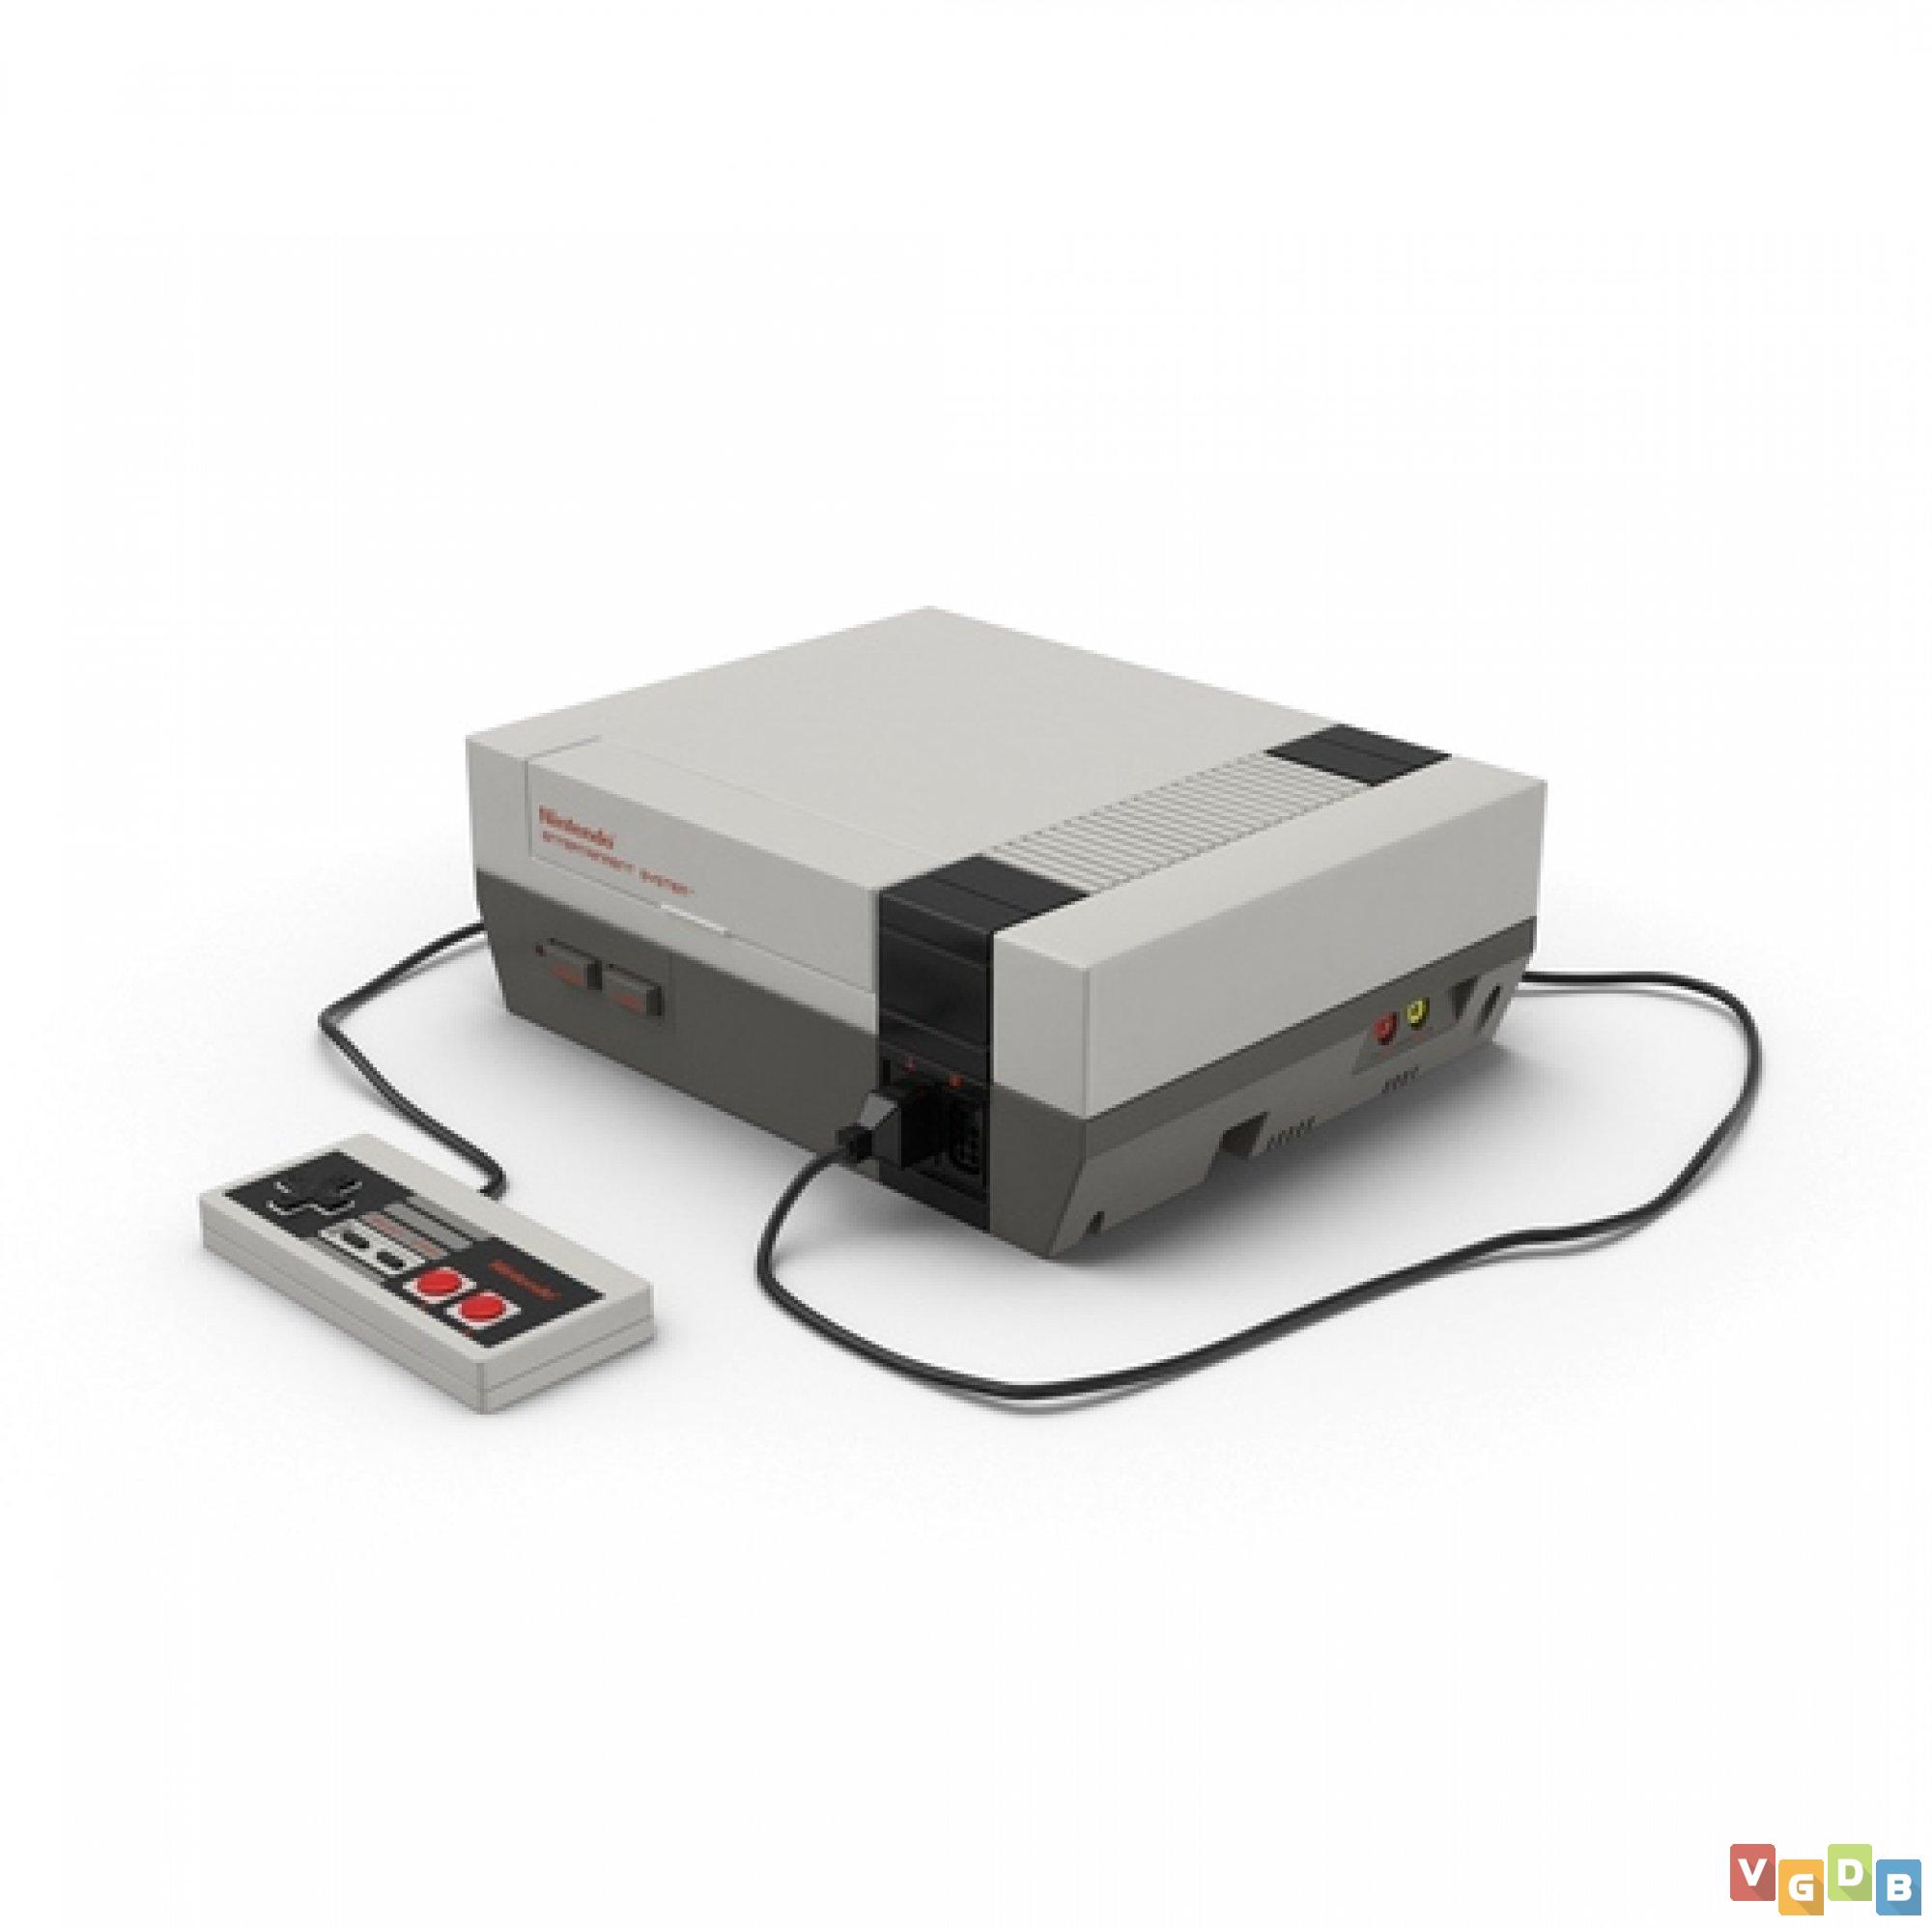 Preços baixos em Jogos de videogame Nintendo NES Robocop